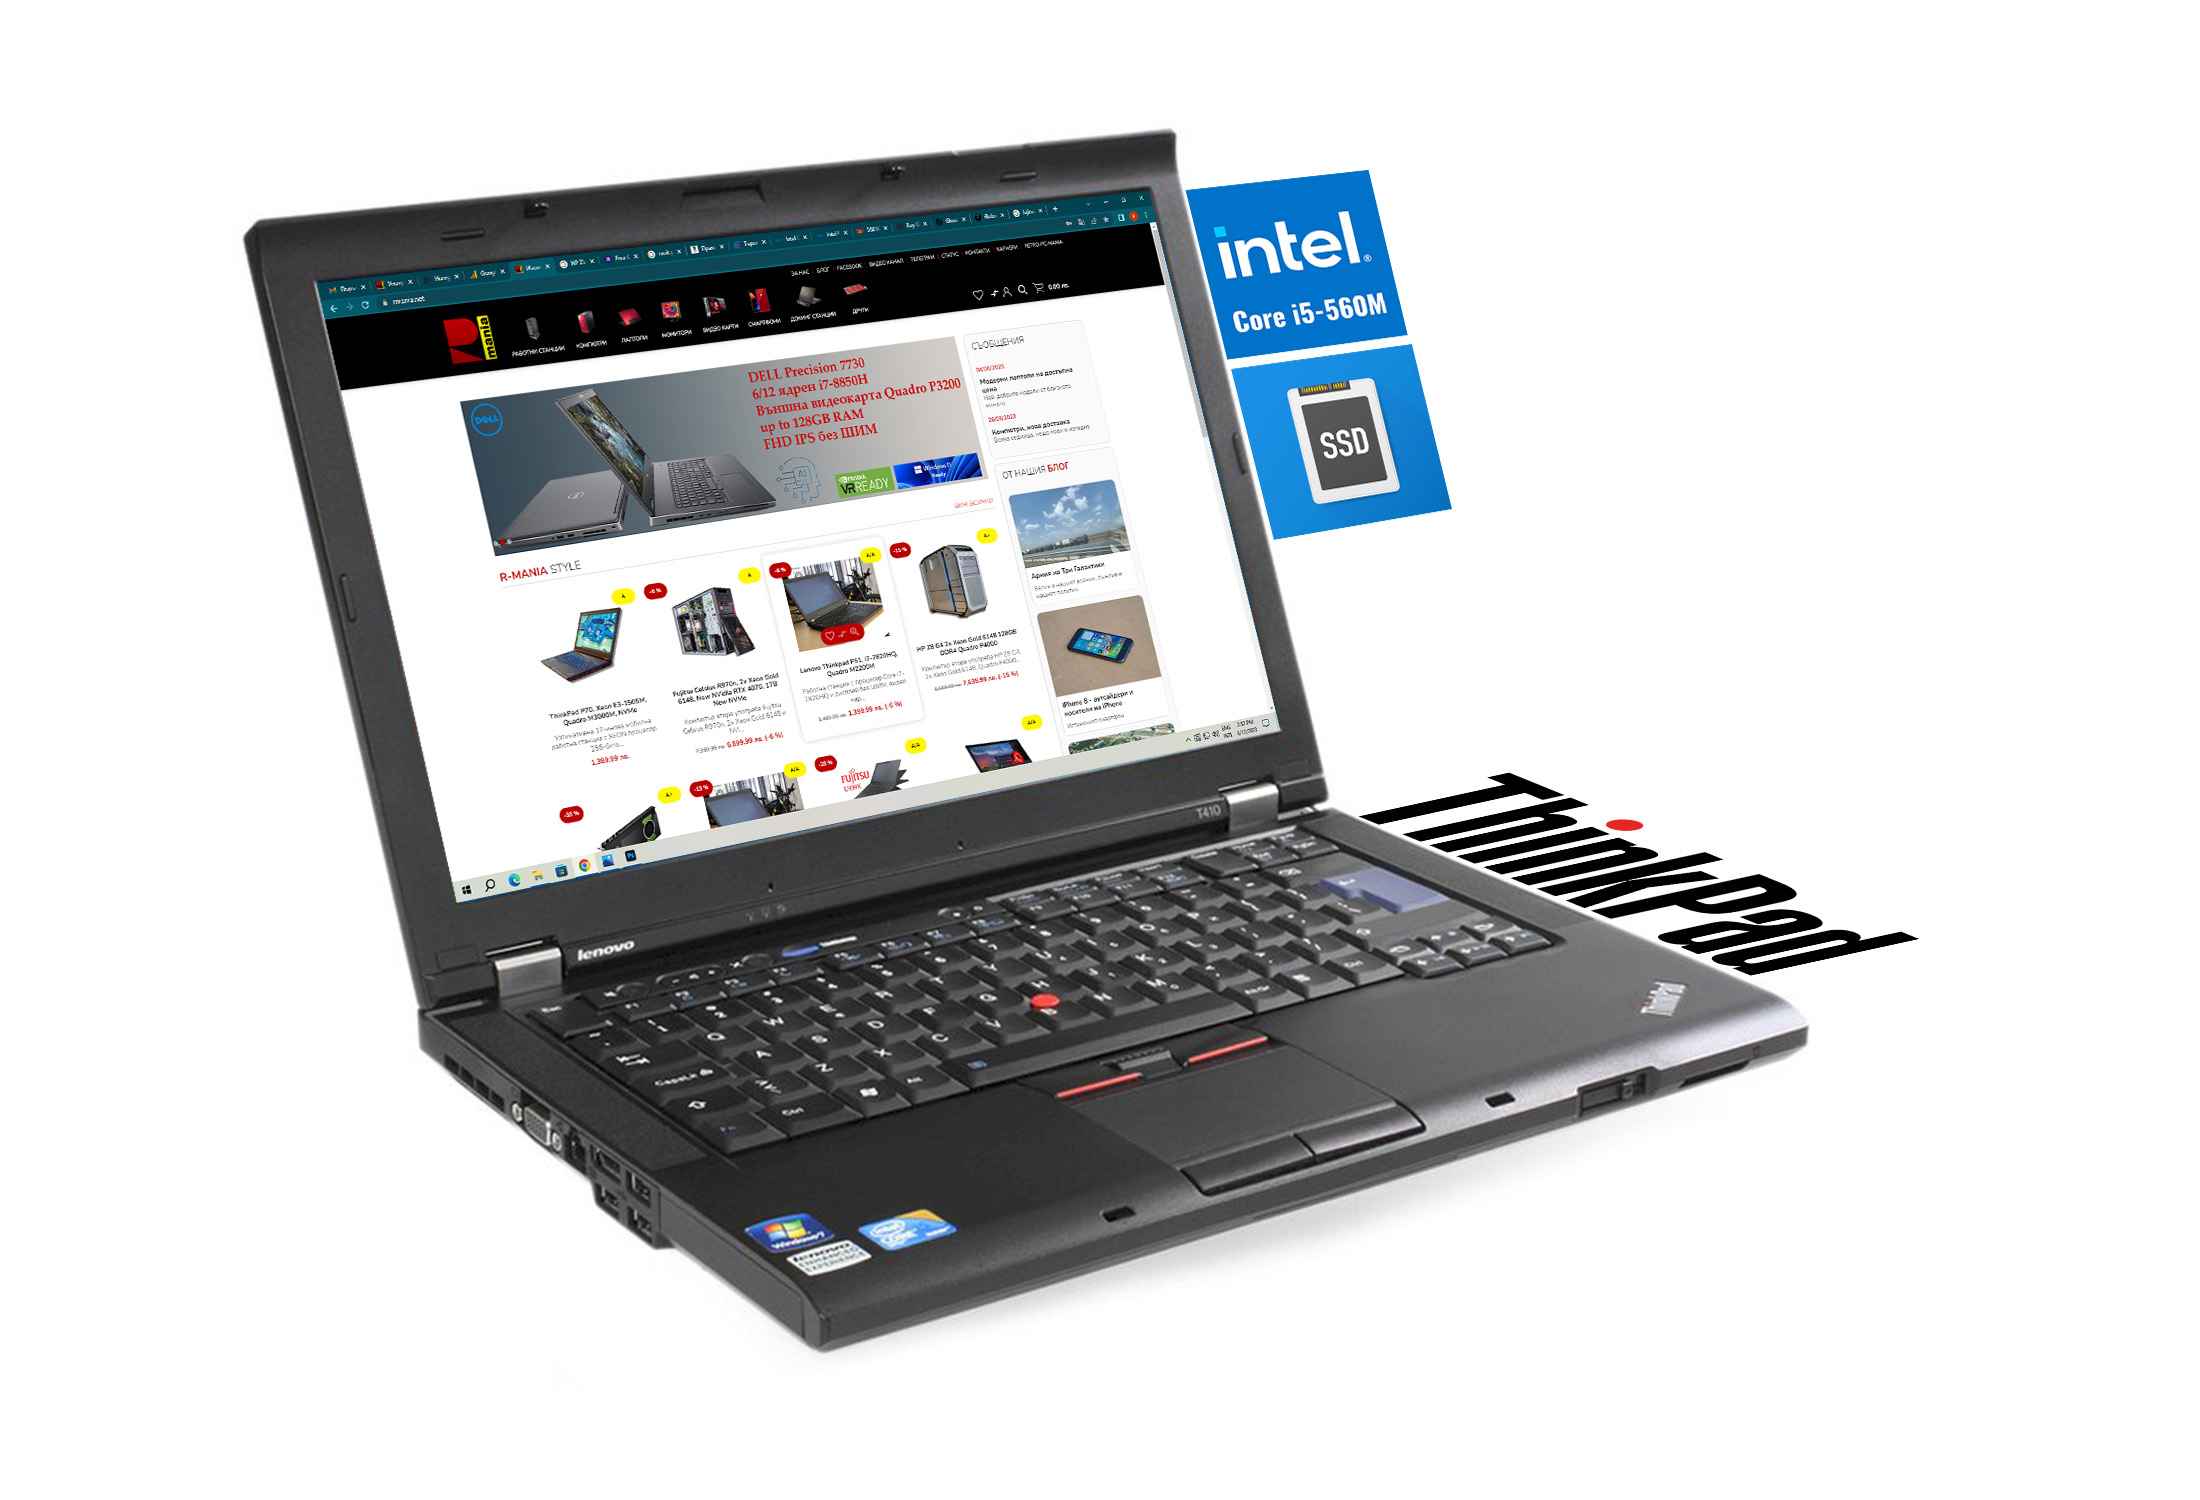 Lenovo Thinkpad T410 Intel Core i5-540M 240GB SSD 4GB RAM